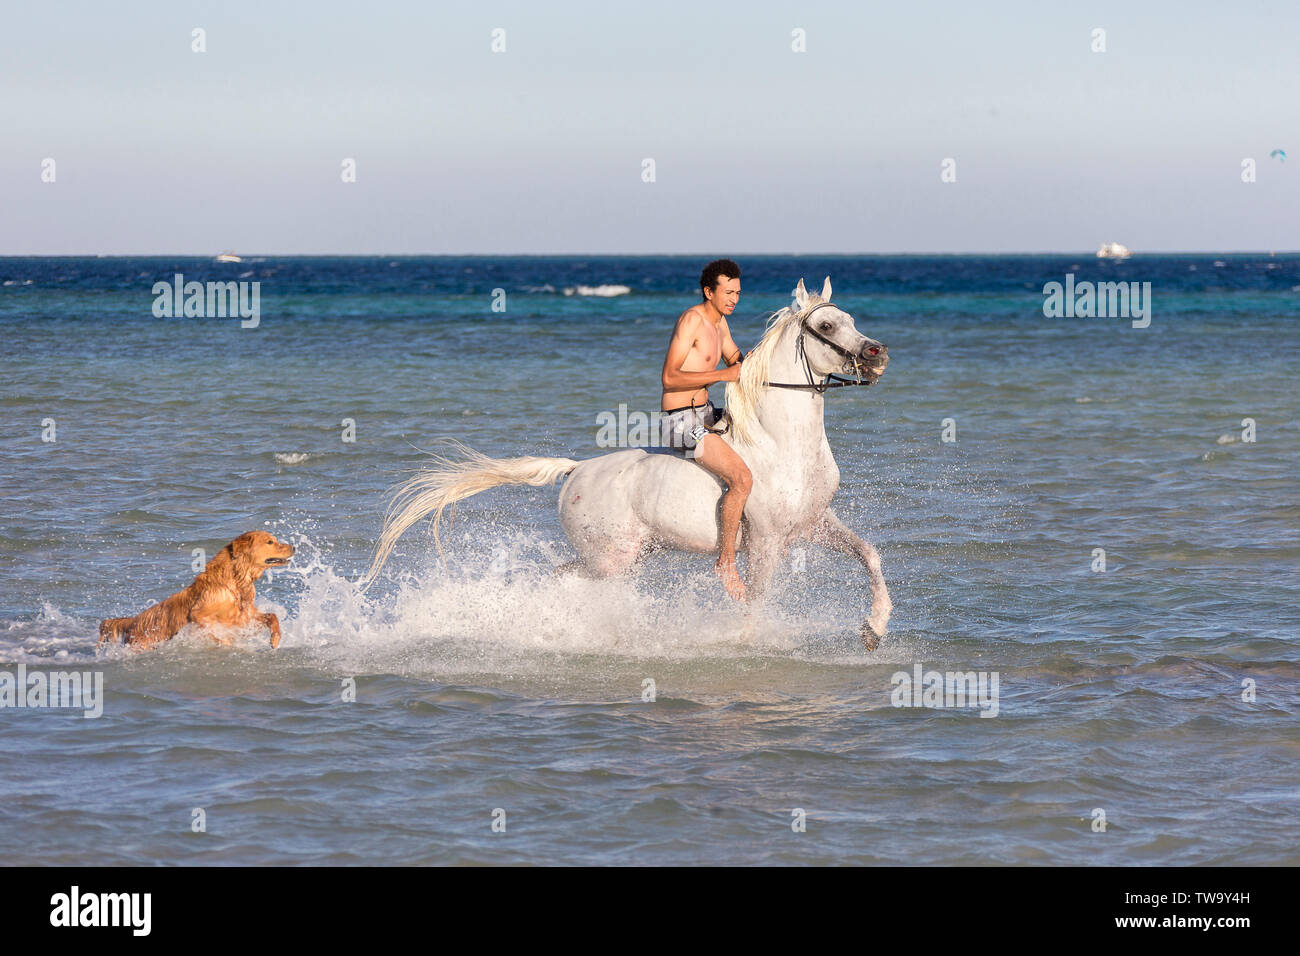 Arabian Horse. Rider un stallone grigio di trotto in mare, accompagnate da un Golden Retriver. Egitto Foto Stock